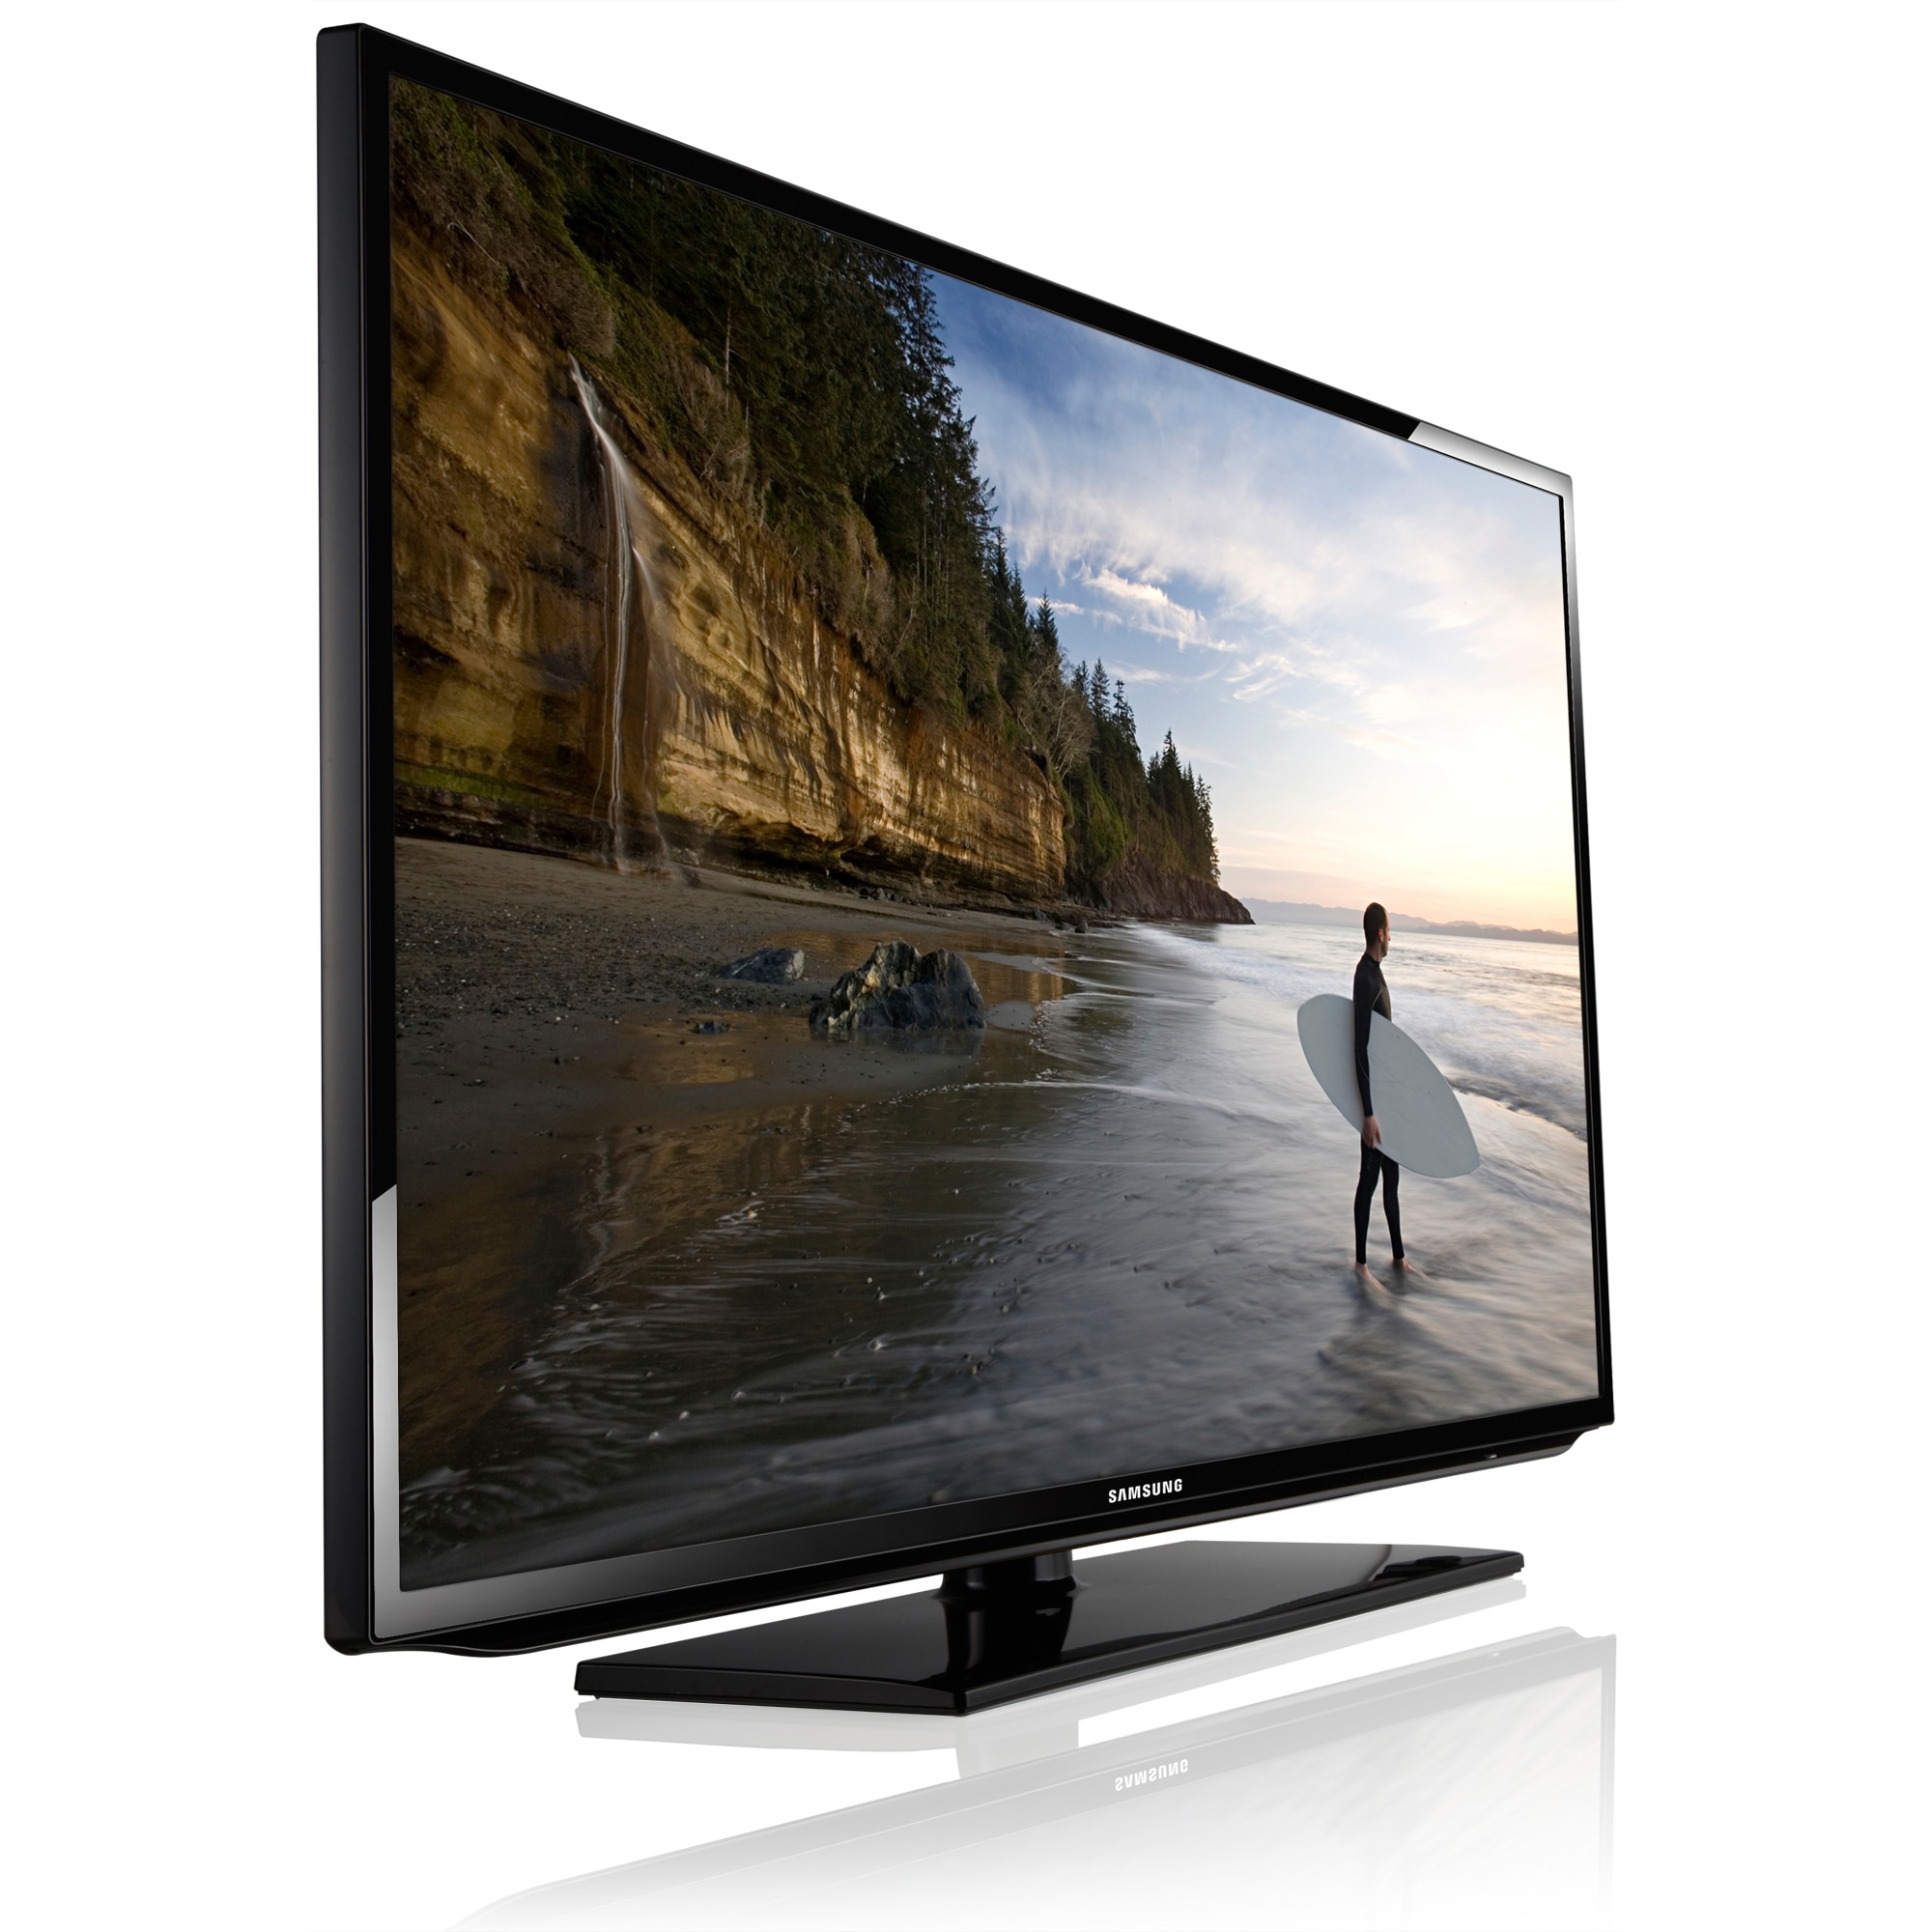 Купить телевизор в сыктывкаре. Samsung Smart TV 32 ue32es5507v. Samsung ue40es5537k. Телевизор Samsung ue50es5507 50". Телевизор Samsung ue40eh5300 40".